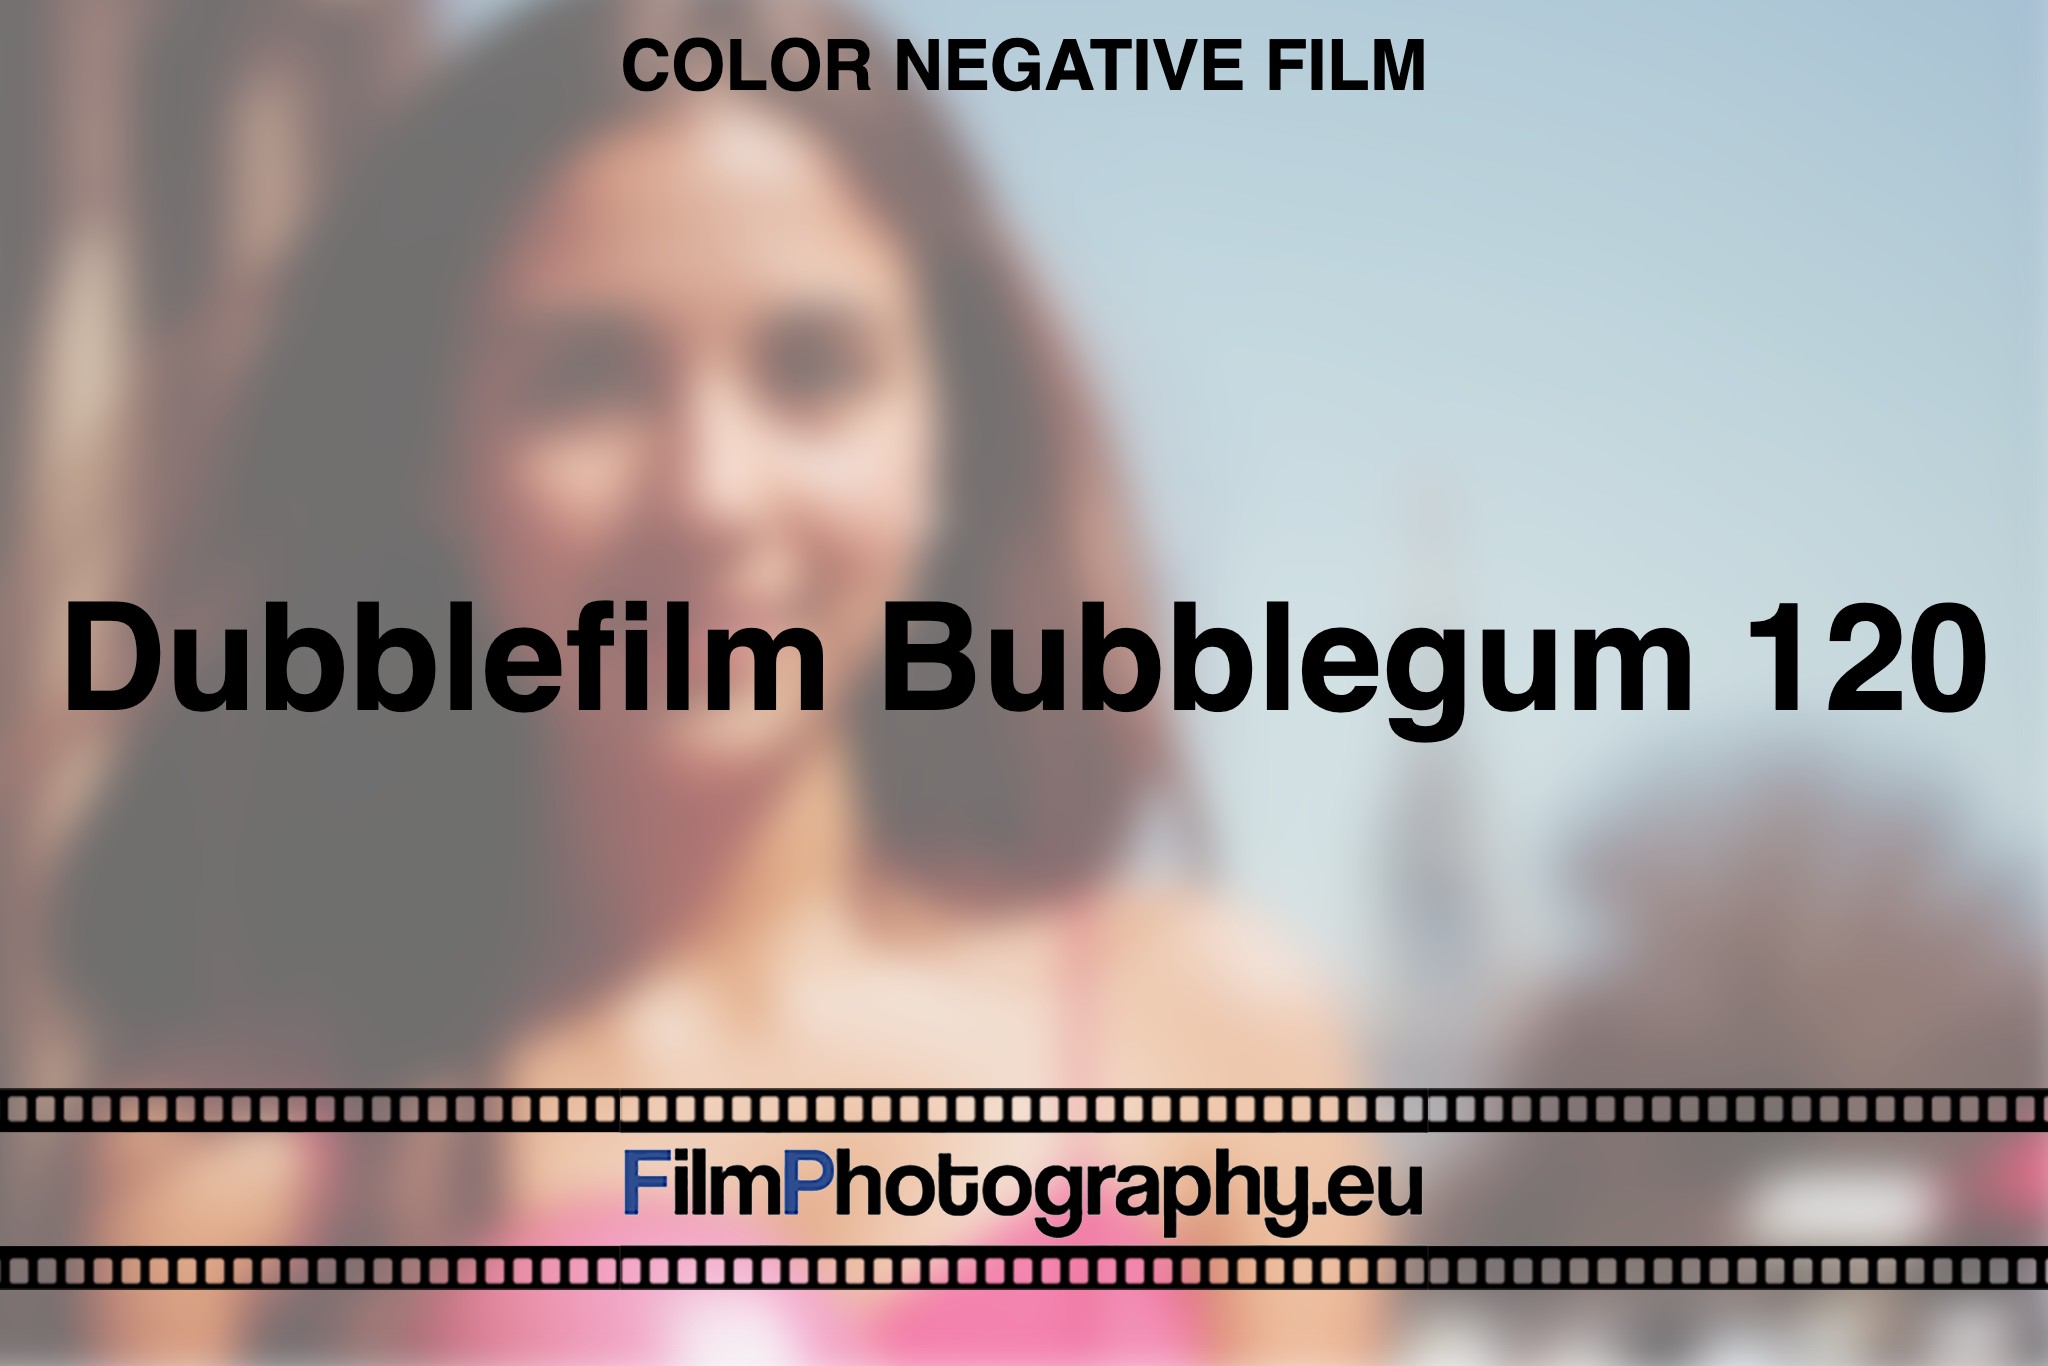 Dubblefilm-Bubblegum-120-Color-negative-film-bnv